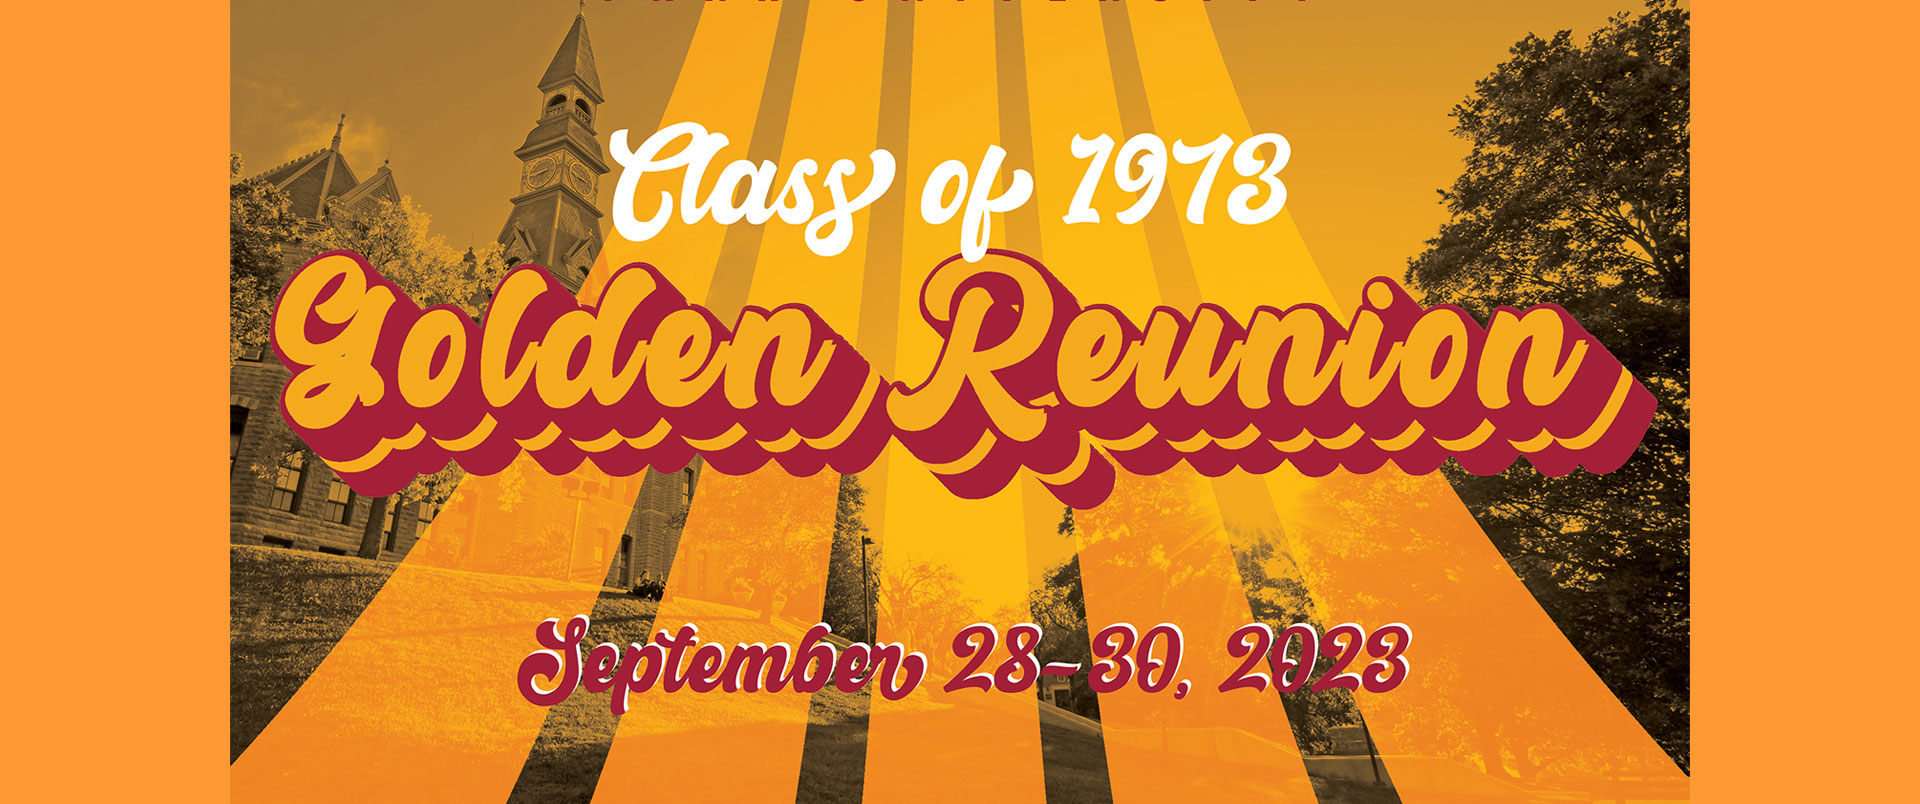 Class of 1973 Golden Reunion